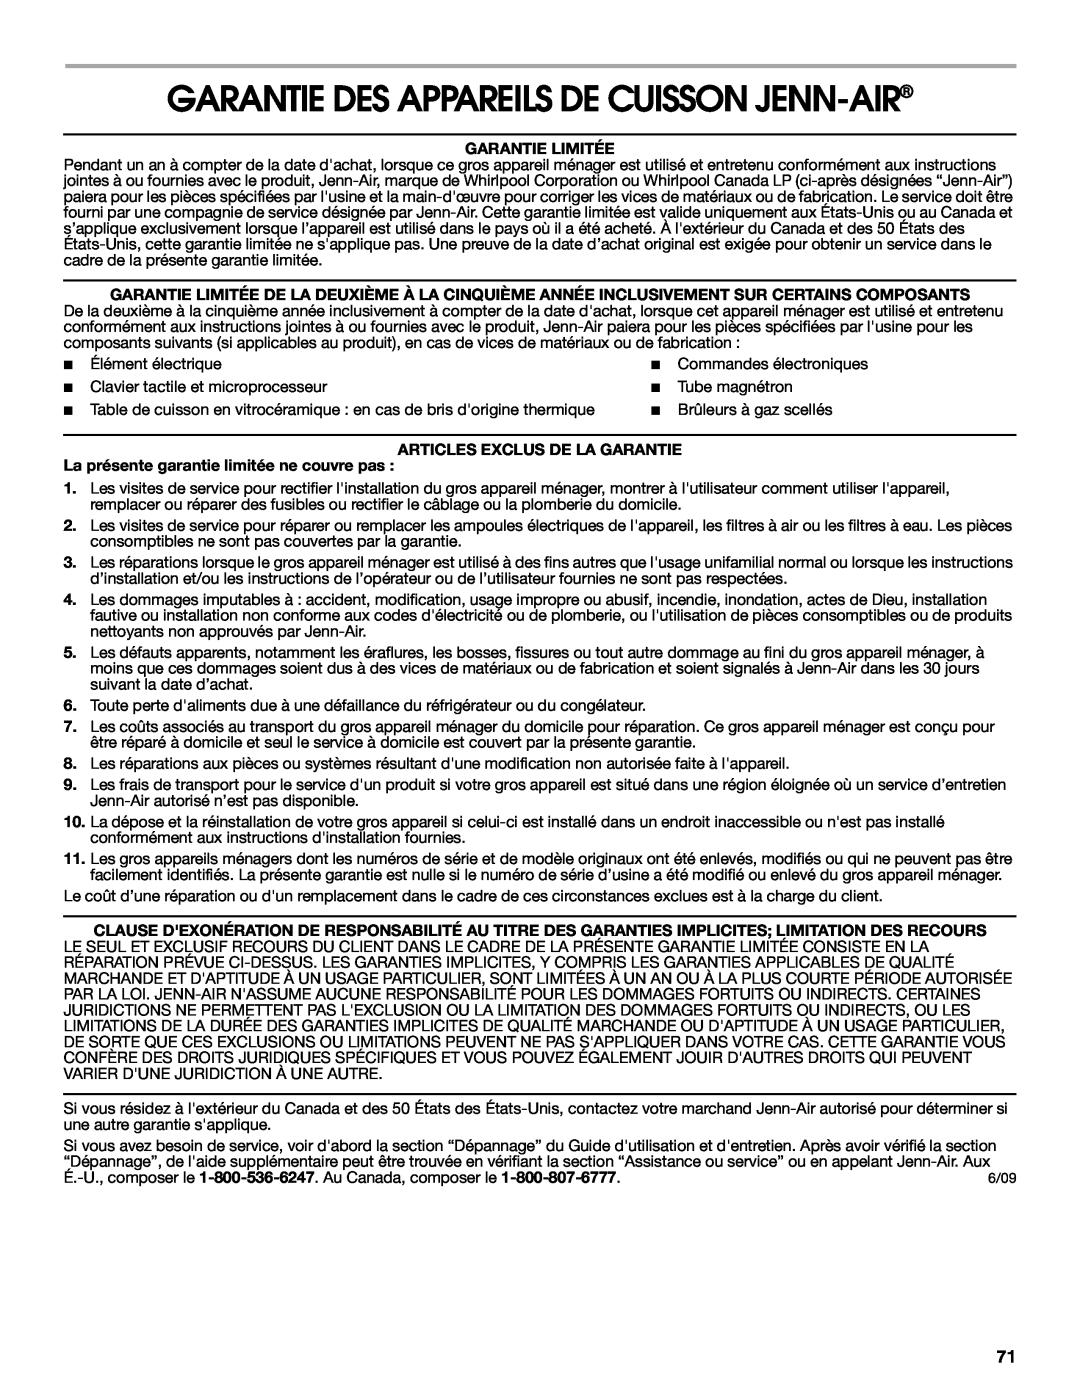 Jenn-Air JDRP430 manual Garantie Des Appareils De Cuisson Jenn-Air, Garantie Limitée, Articles Exclus De La Garantie 